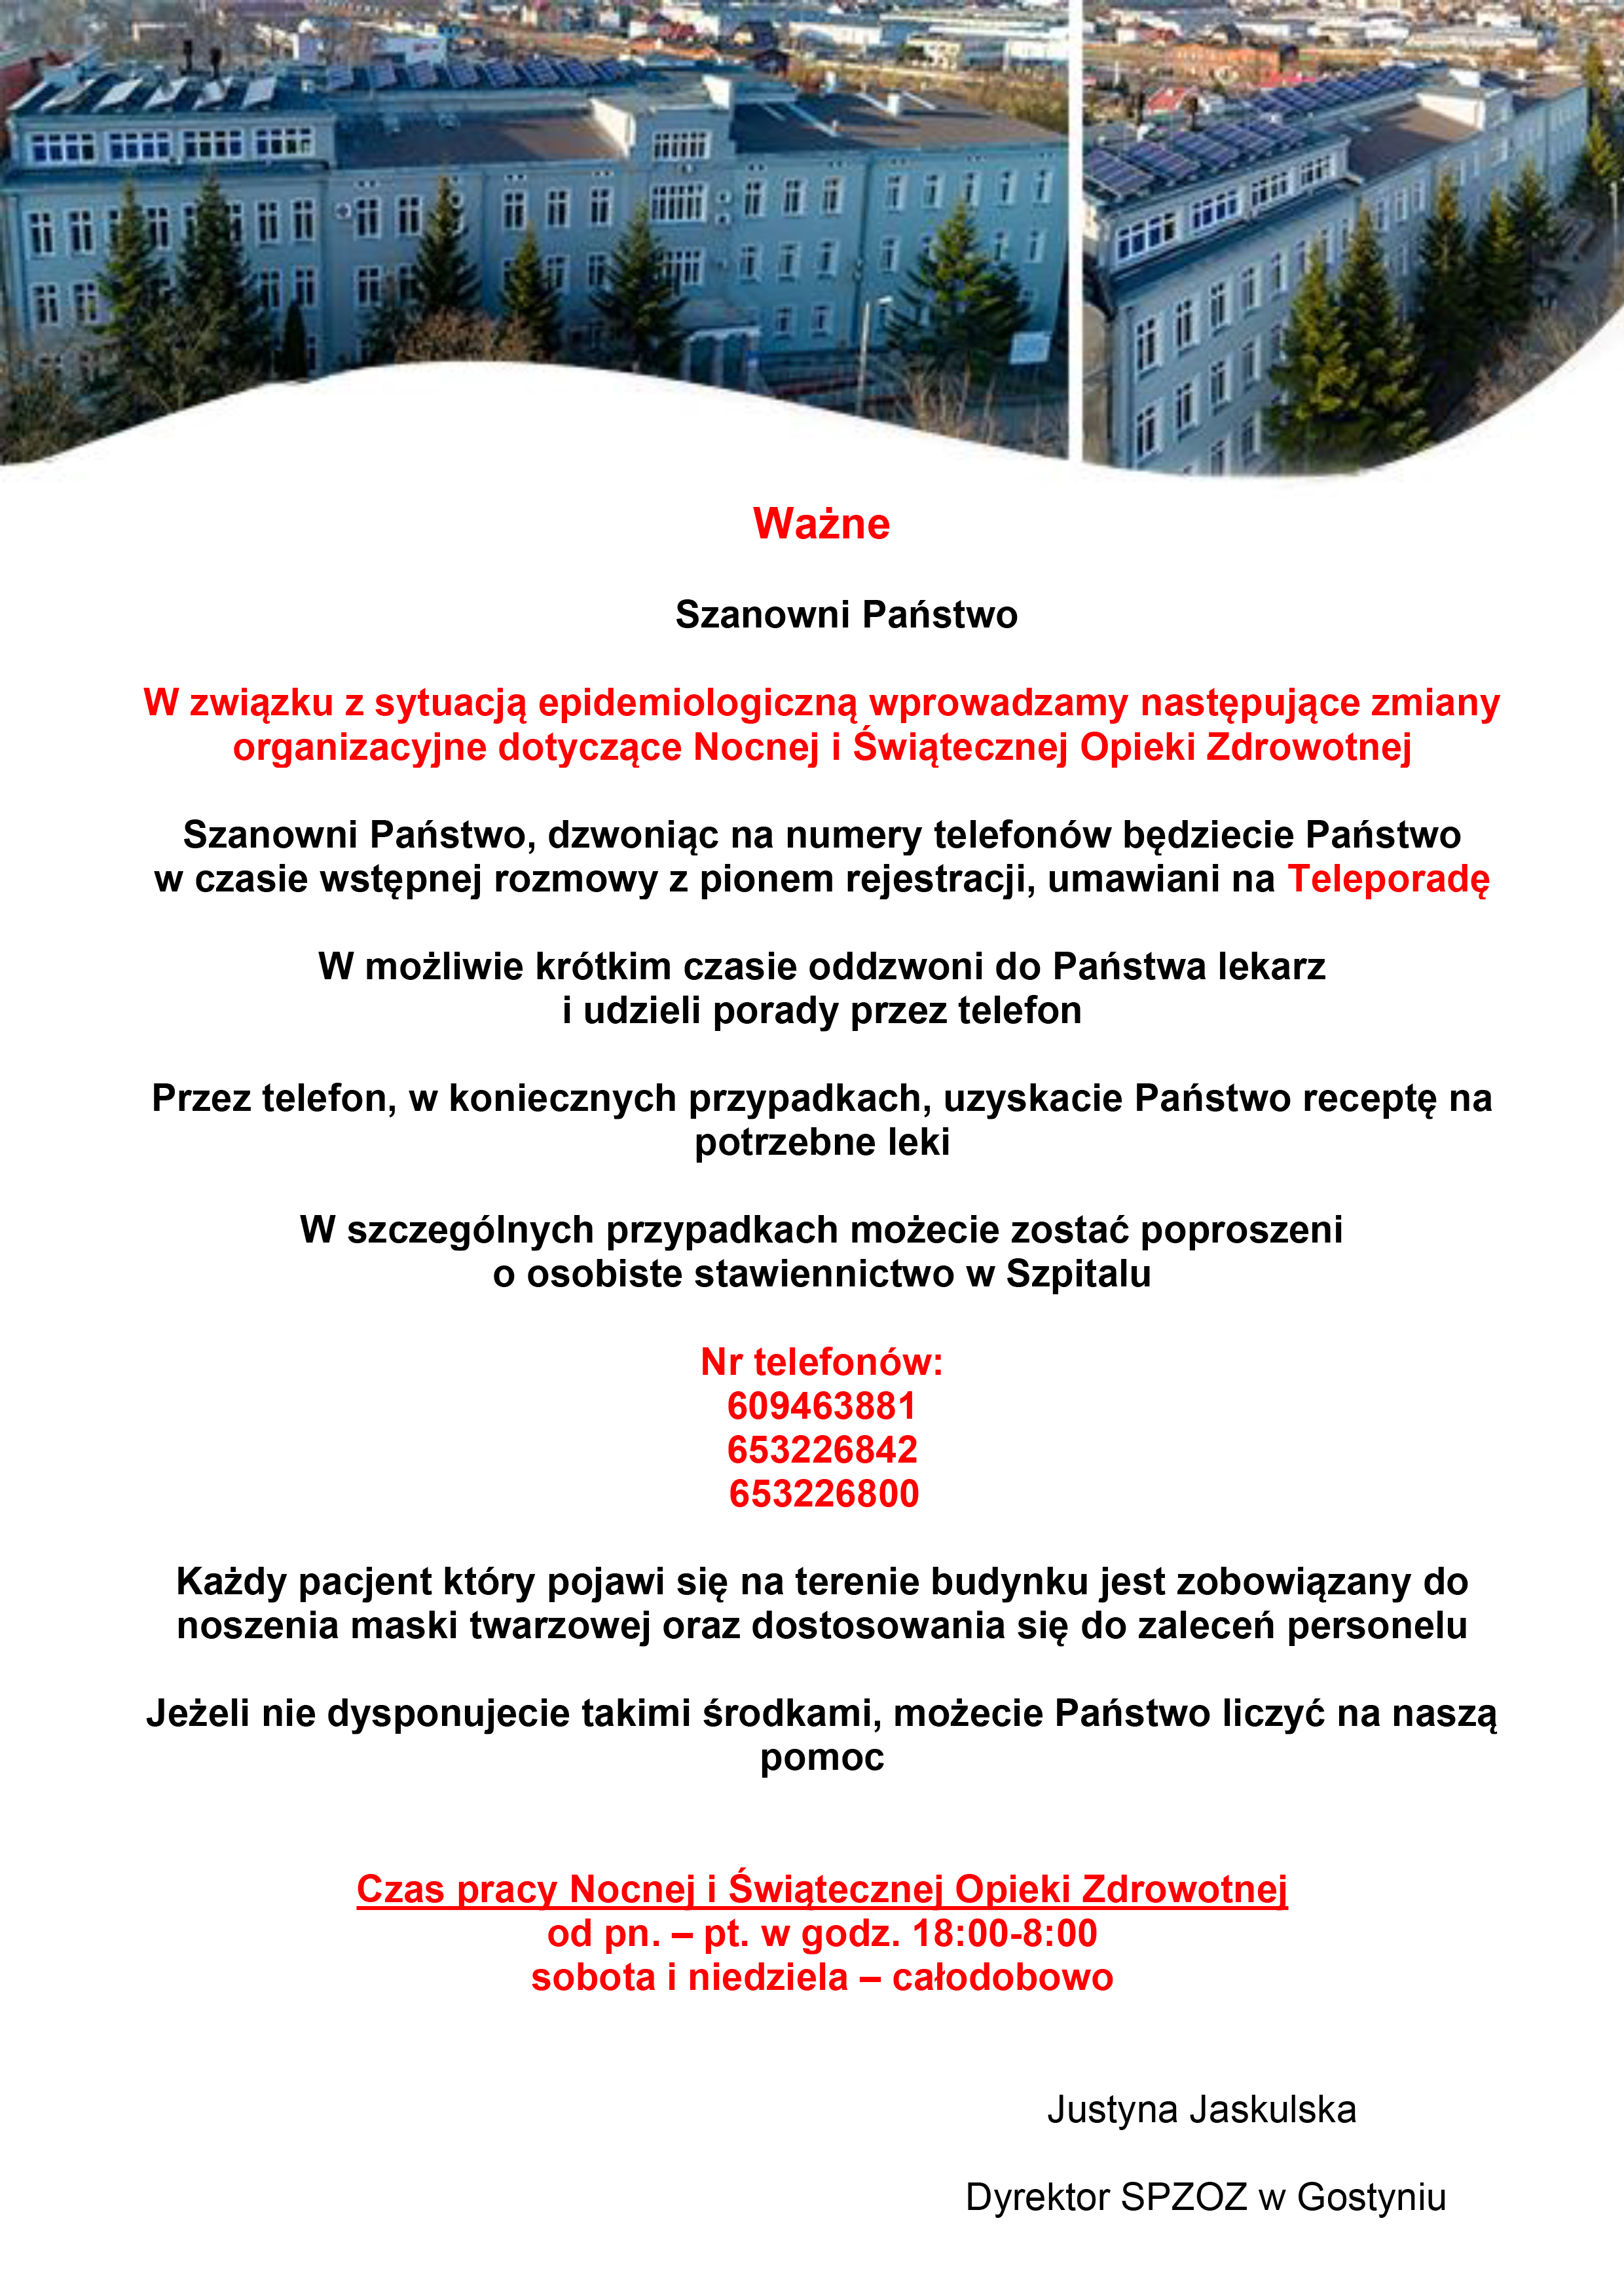 Plakat z informacjami o funkcjonowaniu szpitala w Gostyniu.